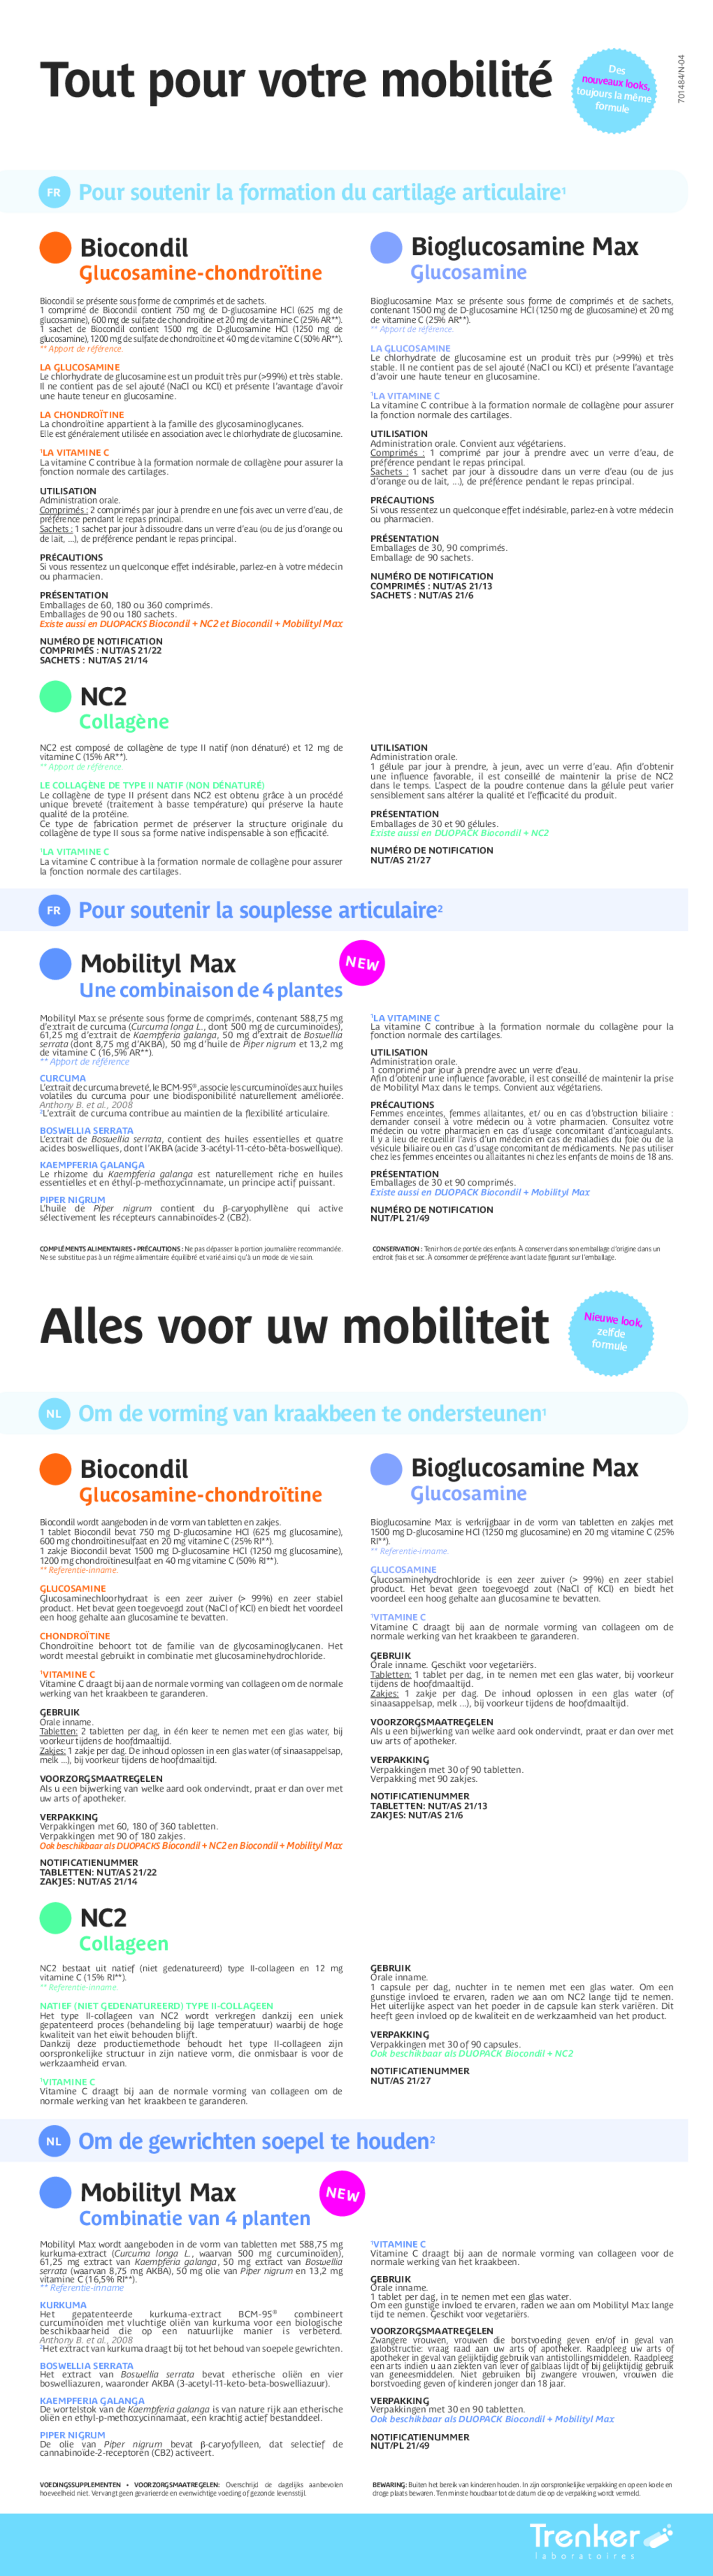 Biocondil & Mobilityl Max Duo Tabletten afbeelding van document #1, gebruiksaanwijzing